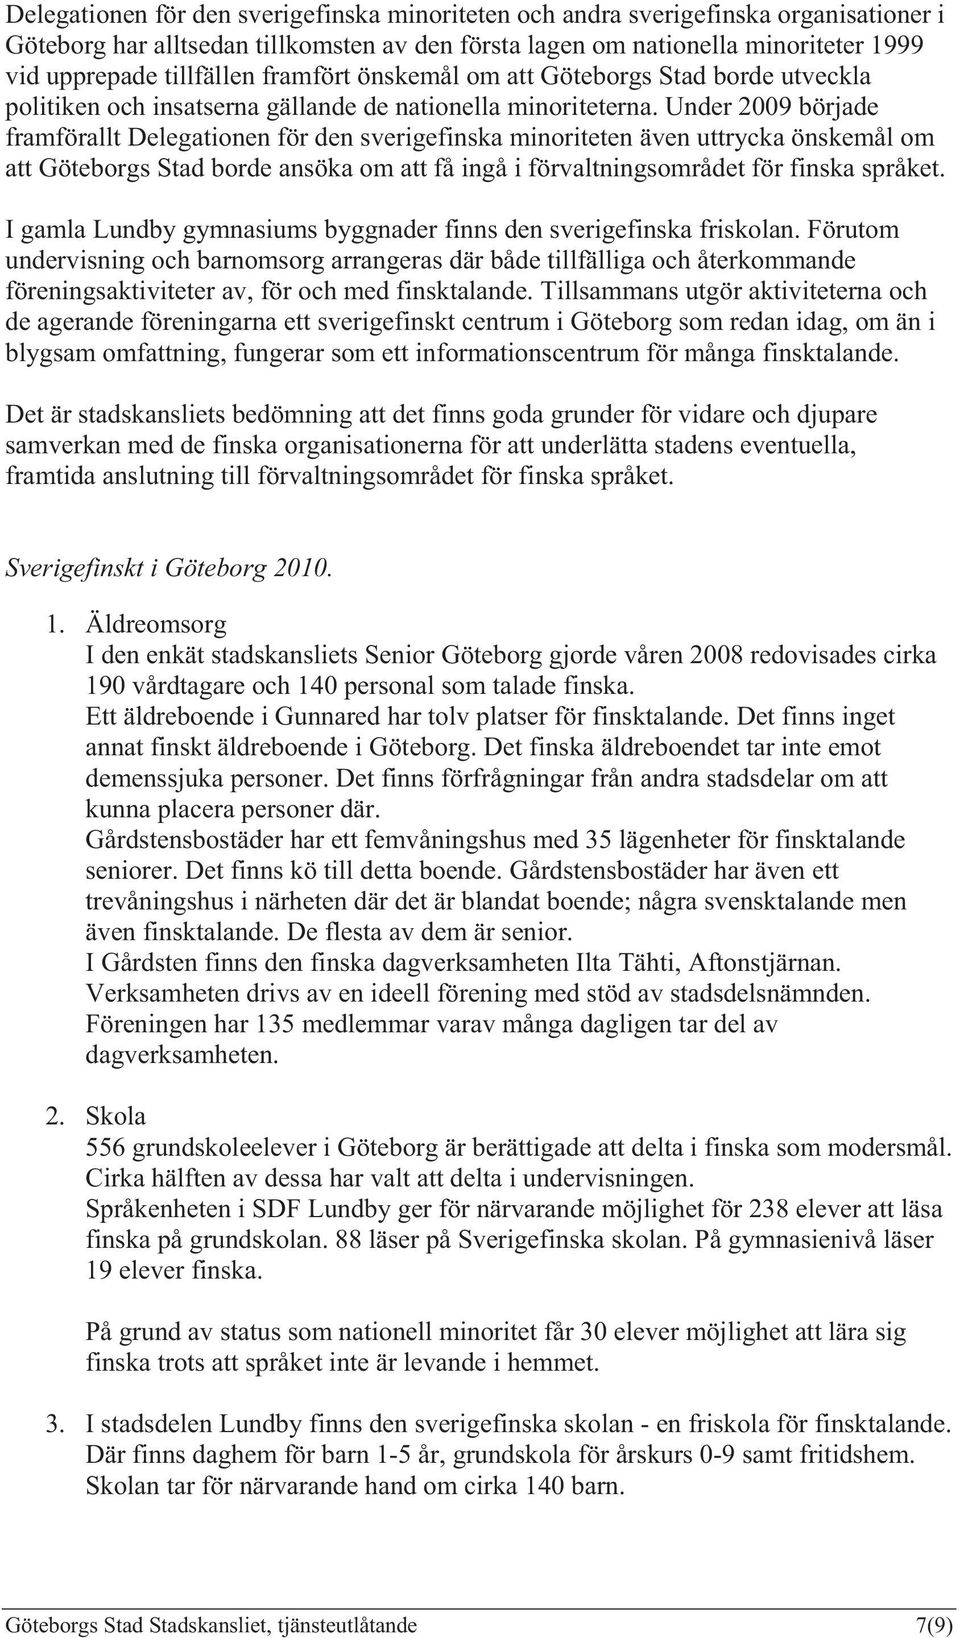 Under 2009 började framförallt Delegationen för den sverigefinska minoriteten även uttrycka önskemål om att Göteborgs Stad borde ansöka om att få ingå i förvaltningsområdet för finska språket.